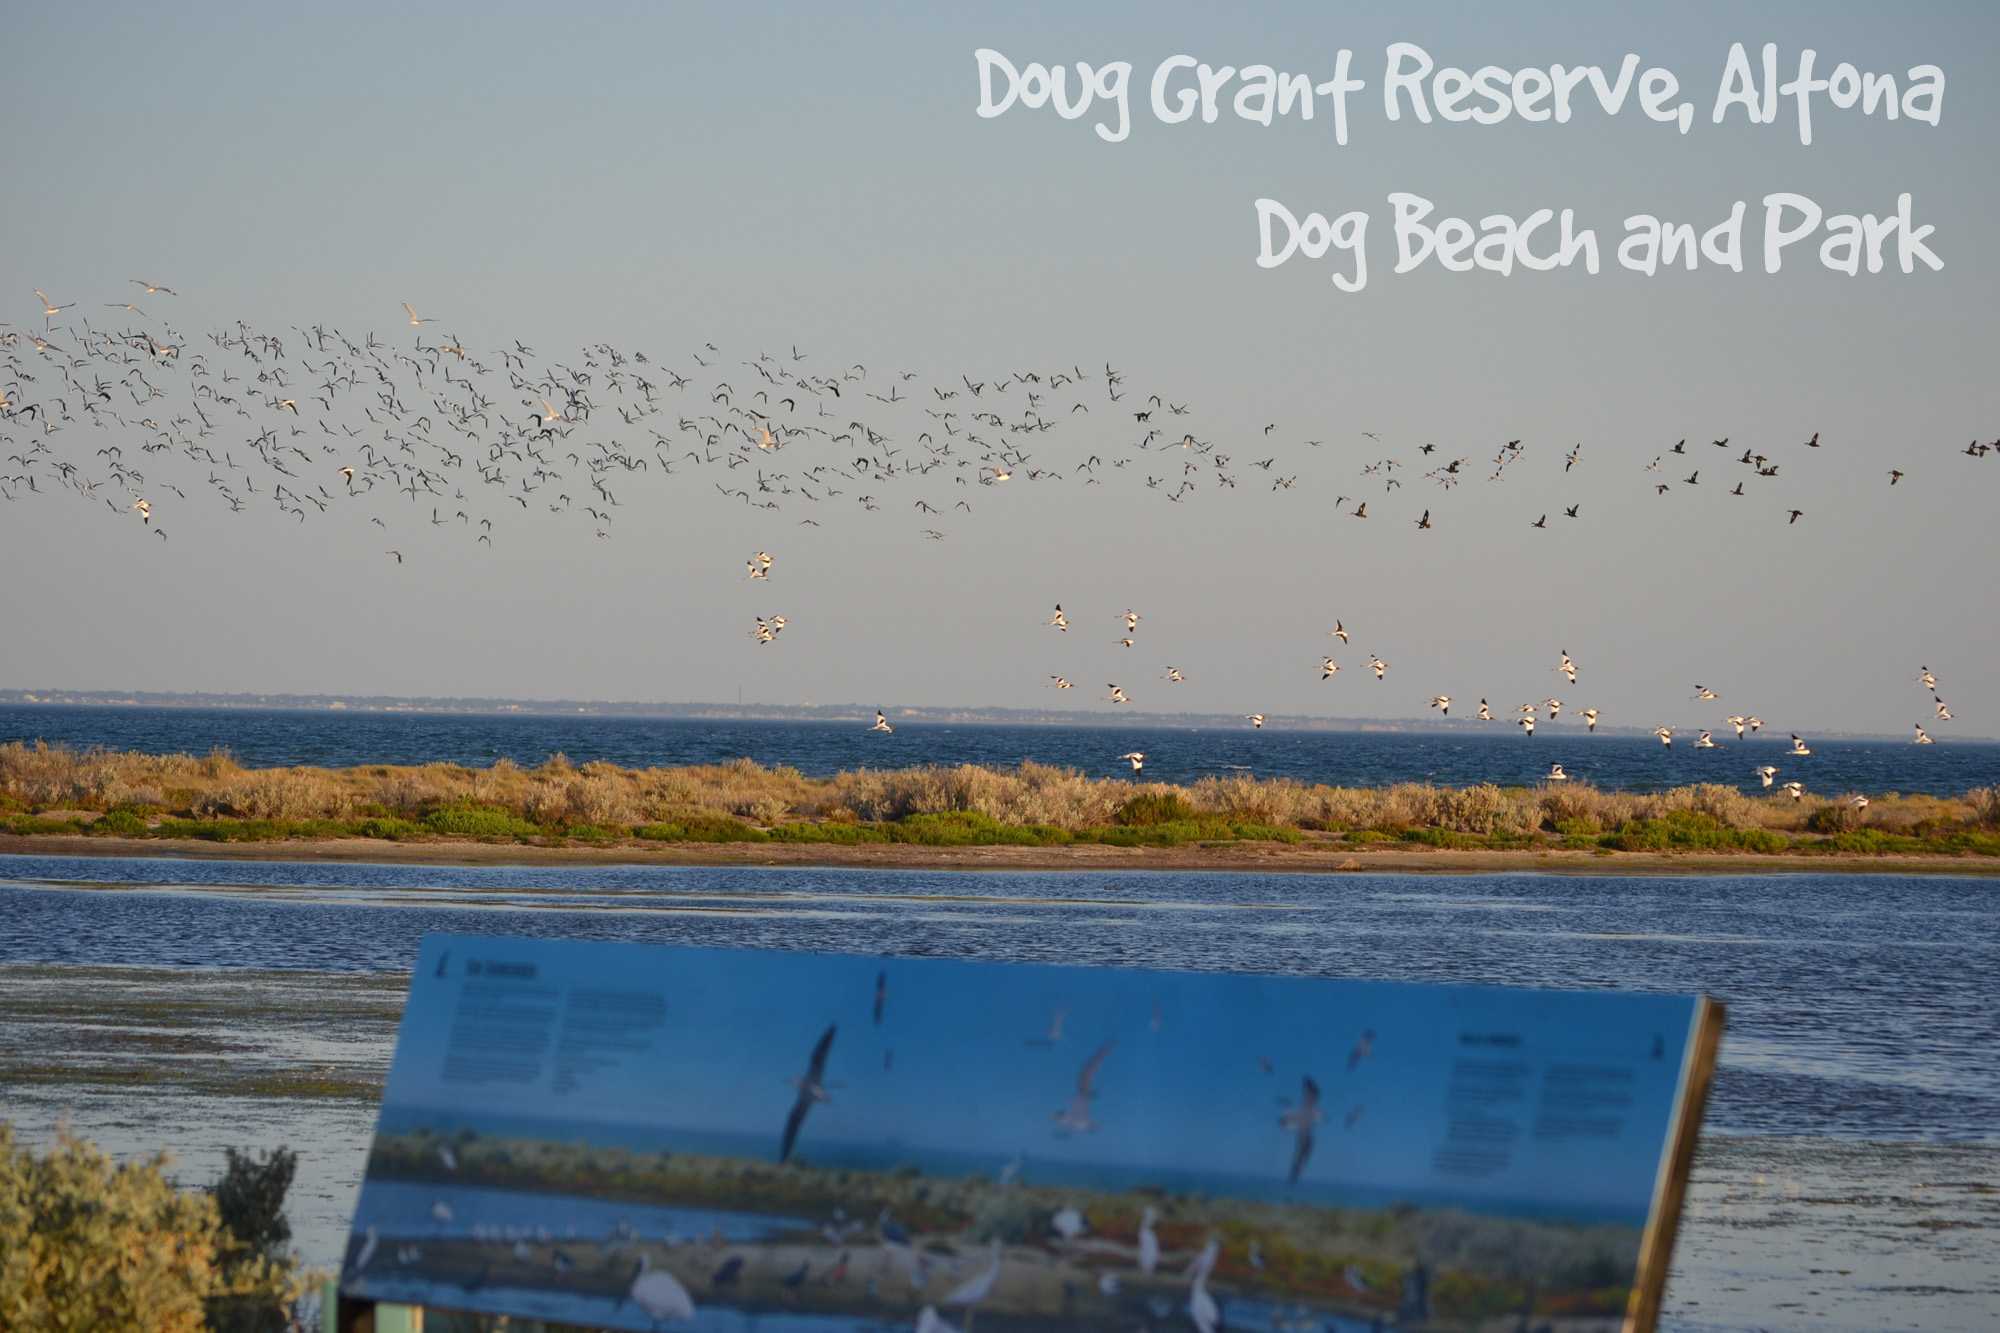 Doug Grant Reserve, Altona - Dog Park and Beach